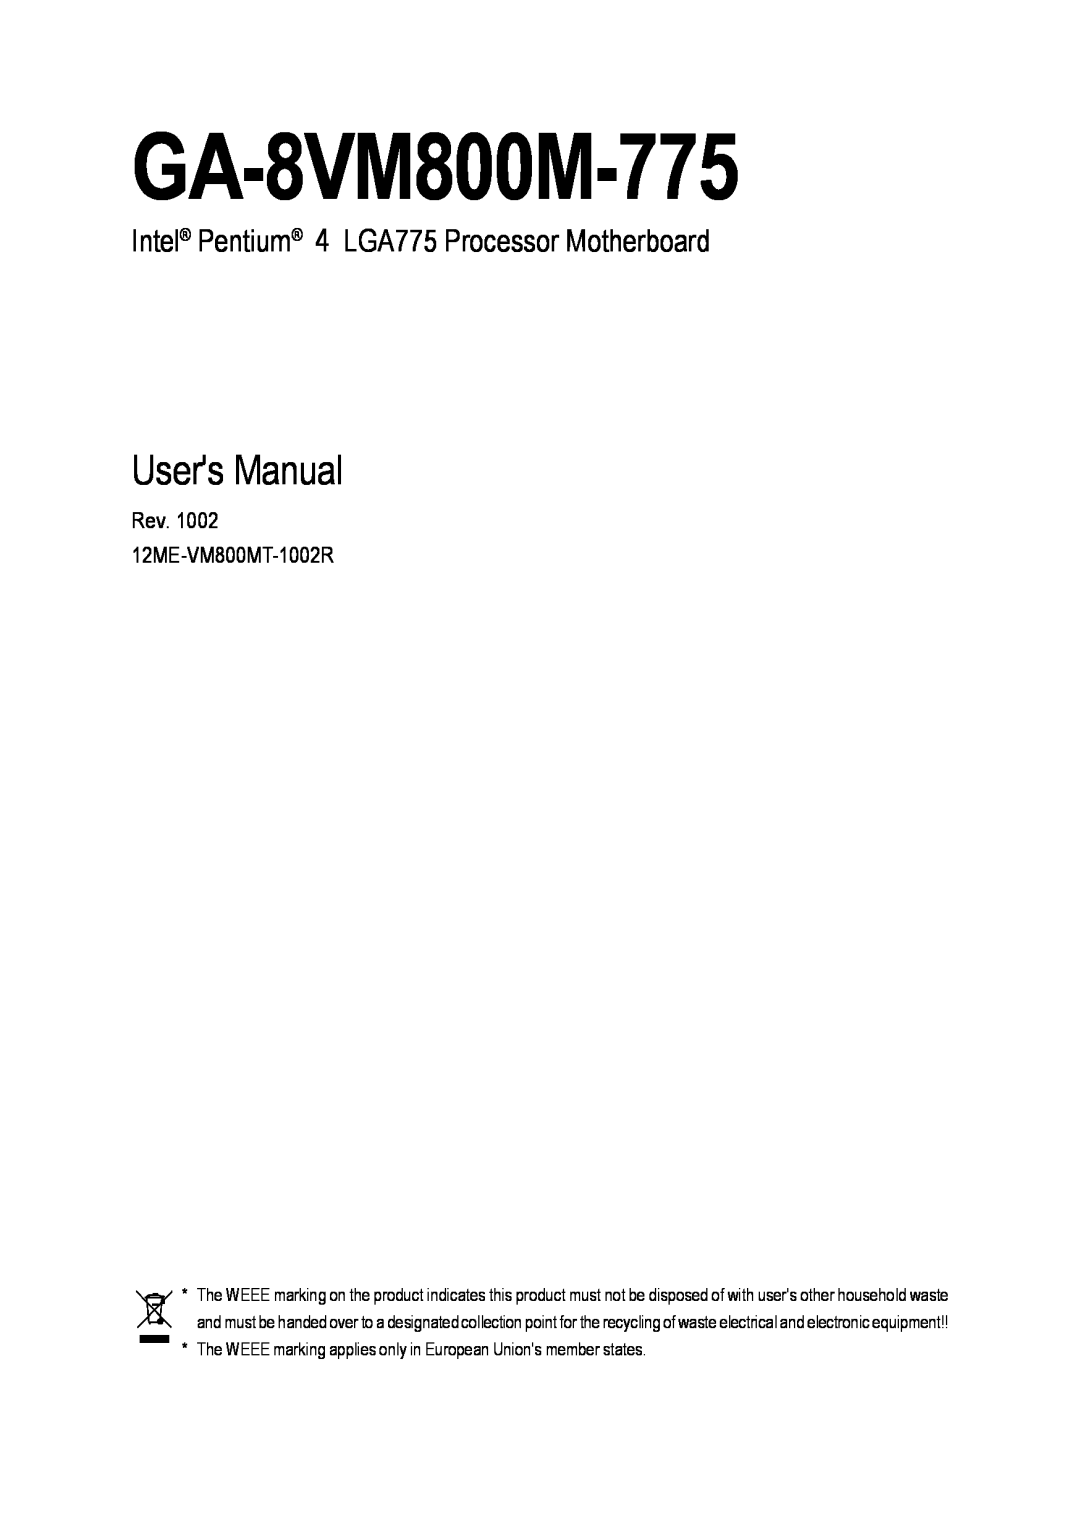 Gigabyte GA-8VM800M-775 user manual Users Manual, Intel Pentium 4 LGA775 Processor Motherboard 